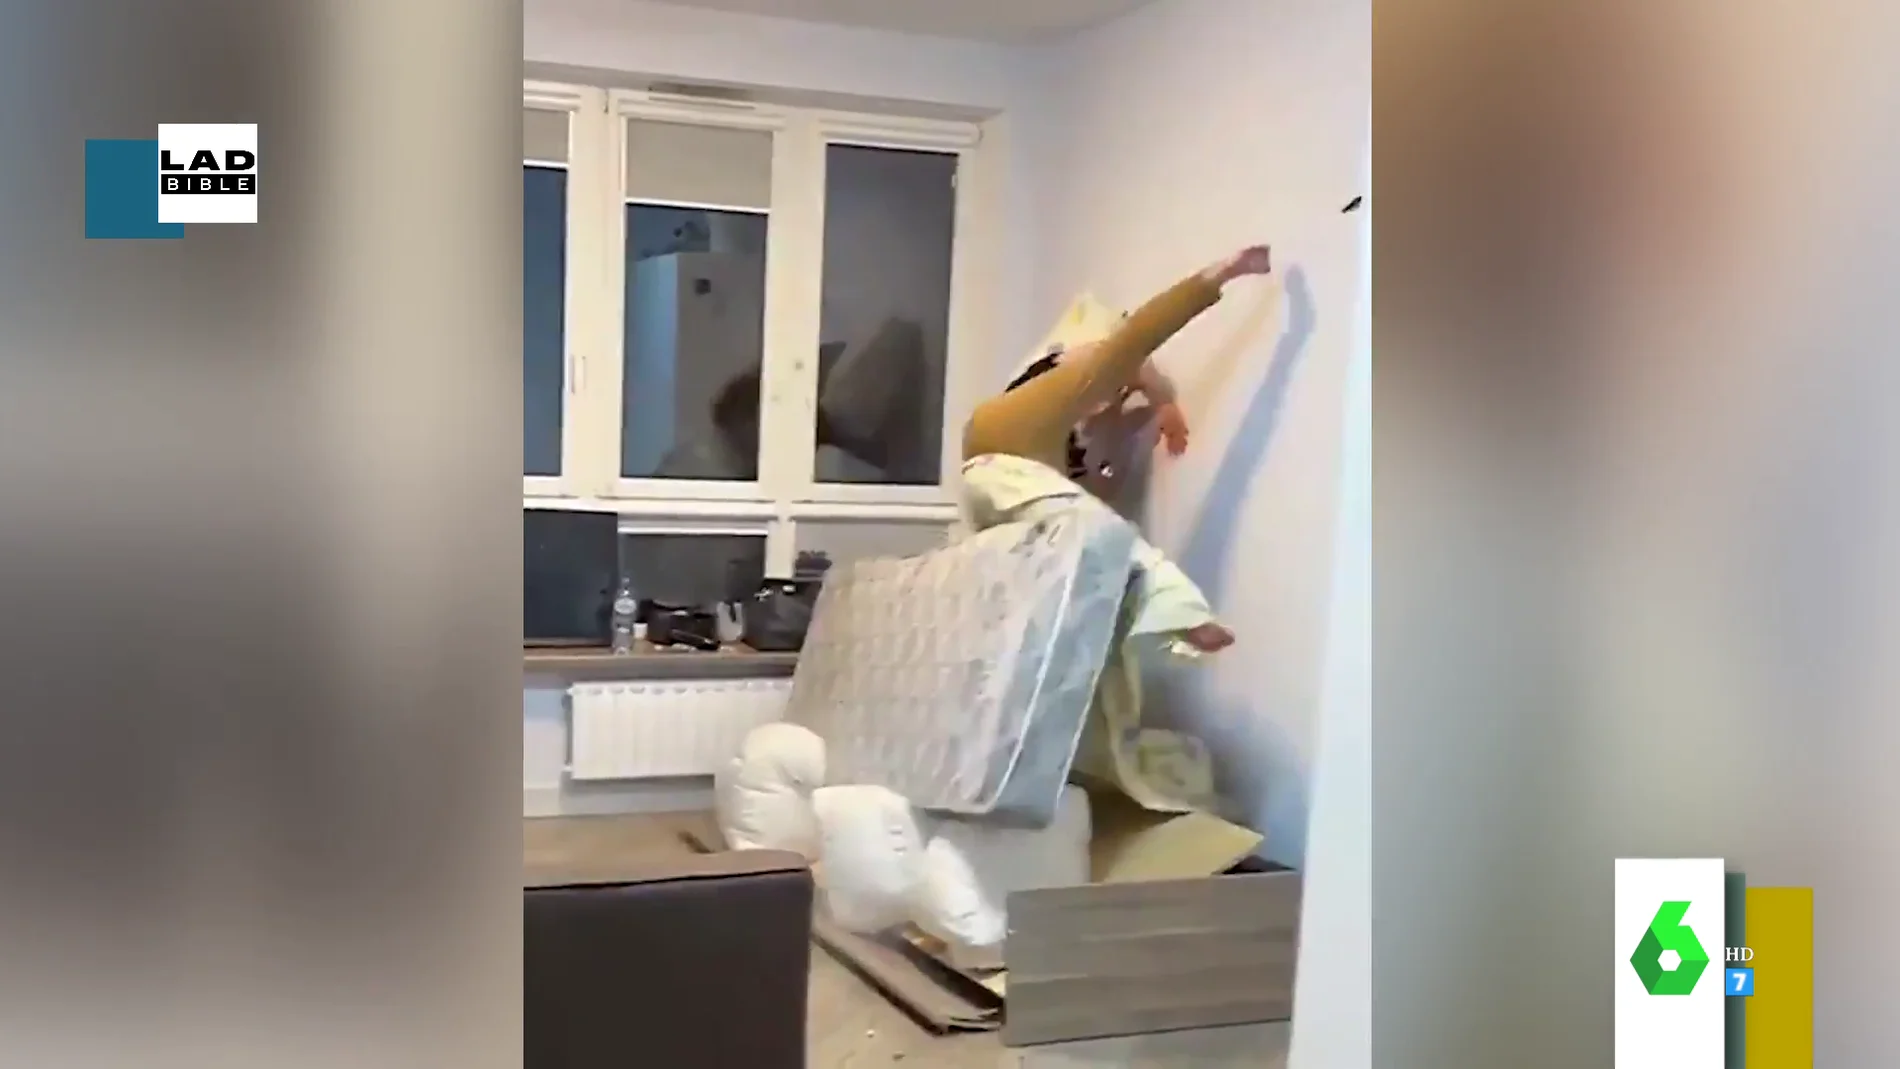 El impactante vídeo en el que un hombre sale volando cuando su cama explota tras una broma